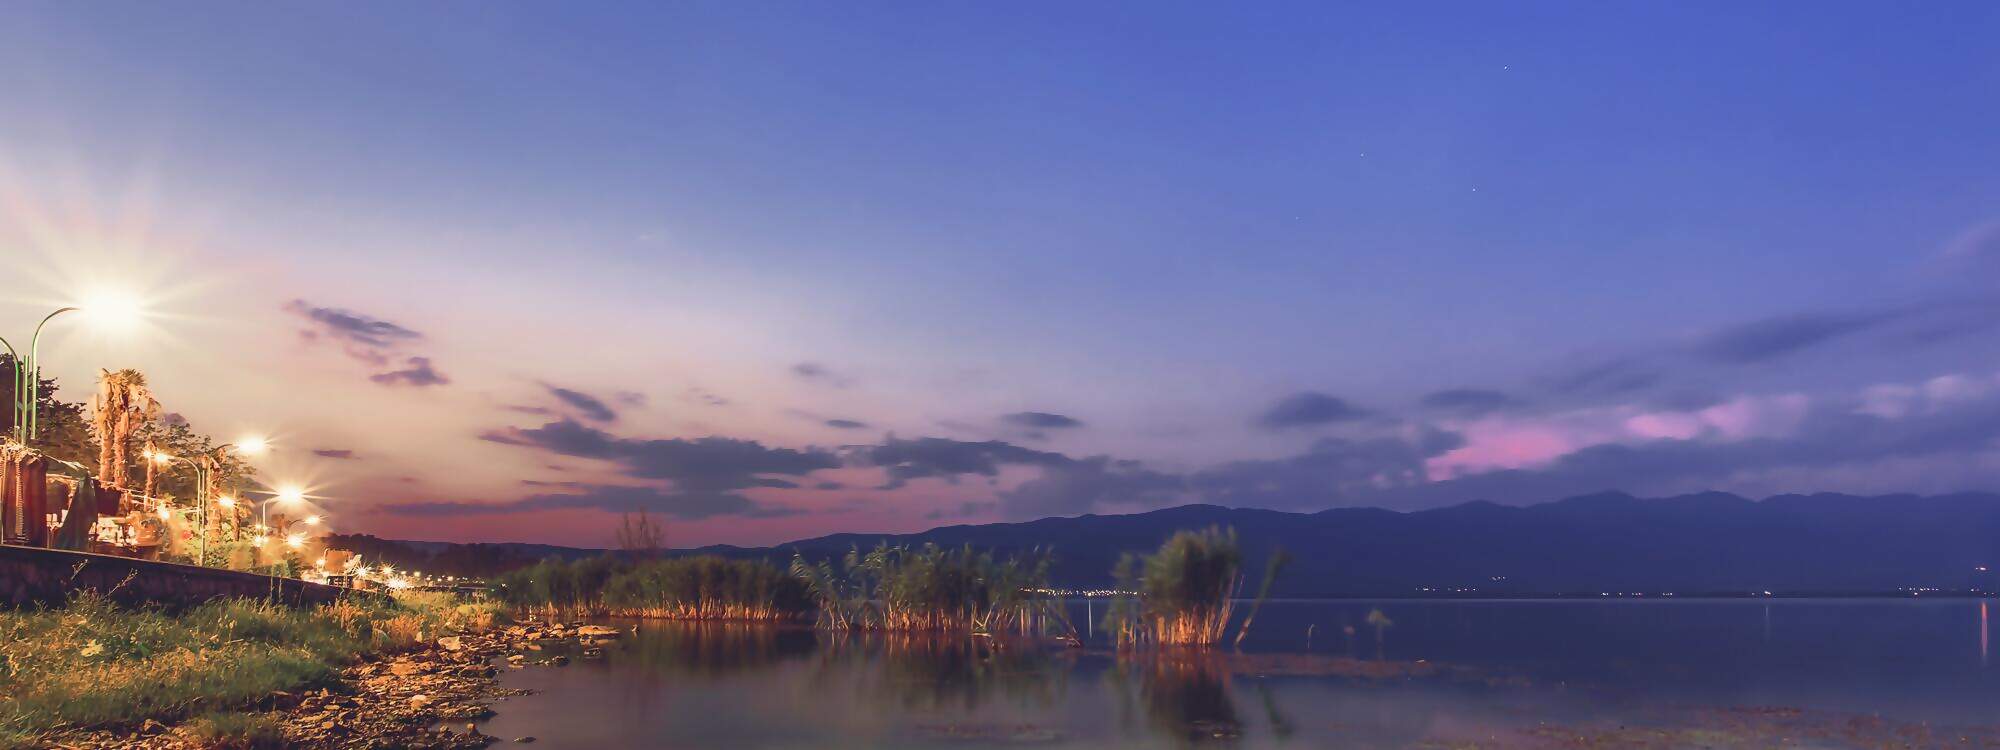 Ruhiger Abend am See - Sonnenuntergang am See Dojran in Nordmazedonien